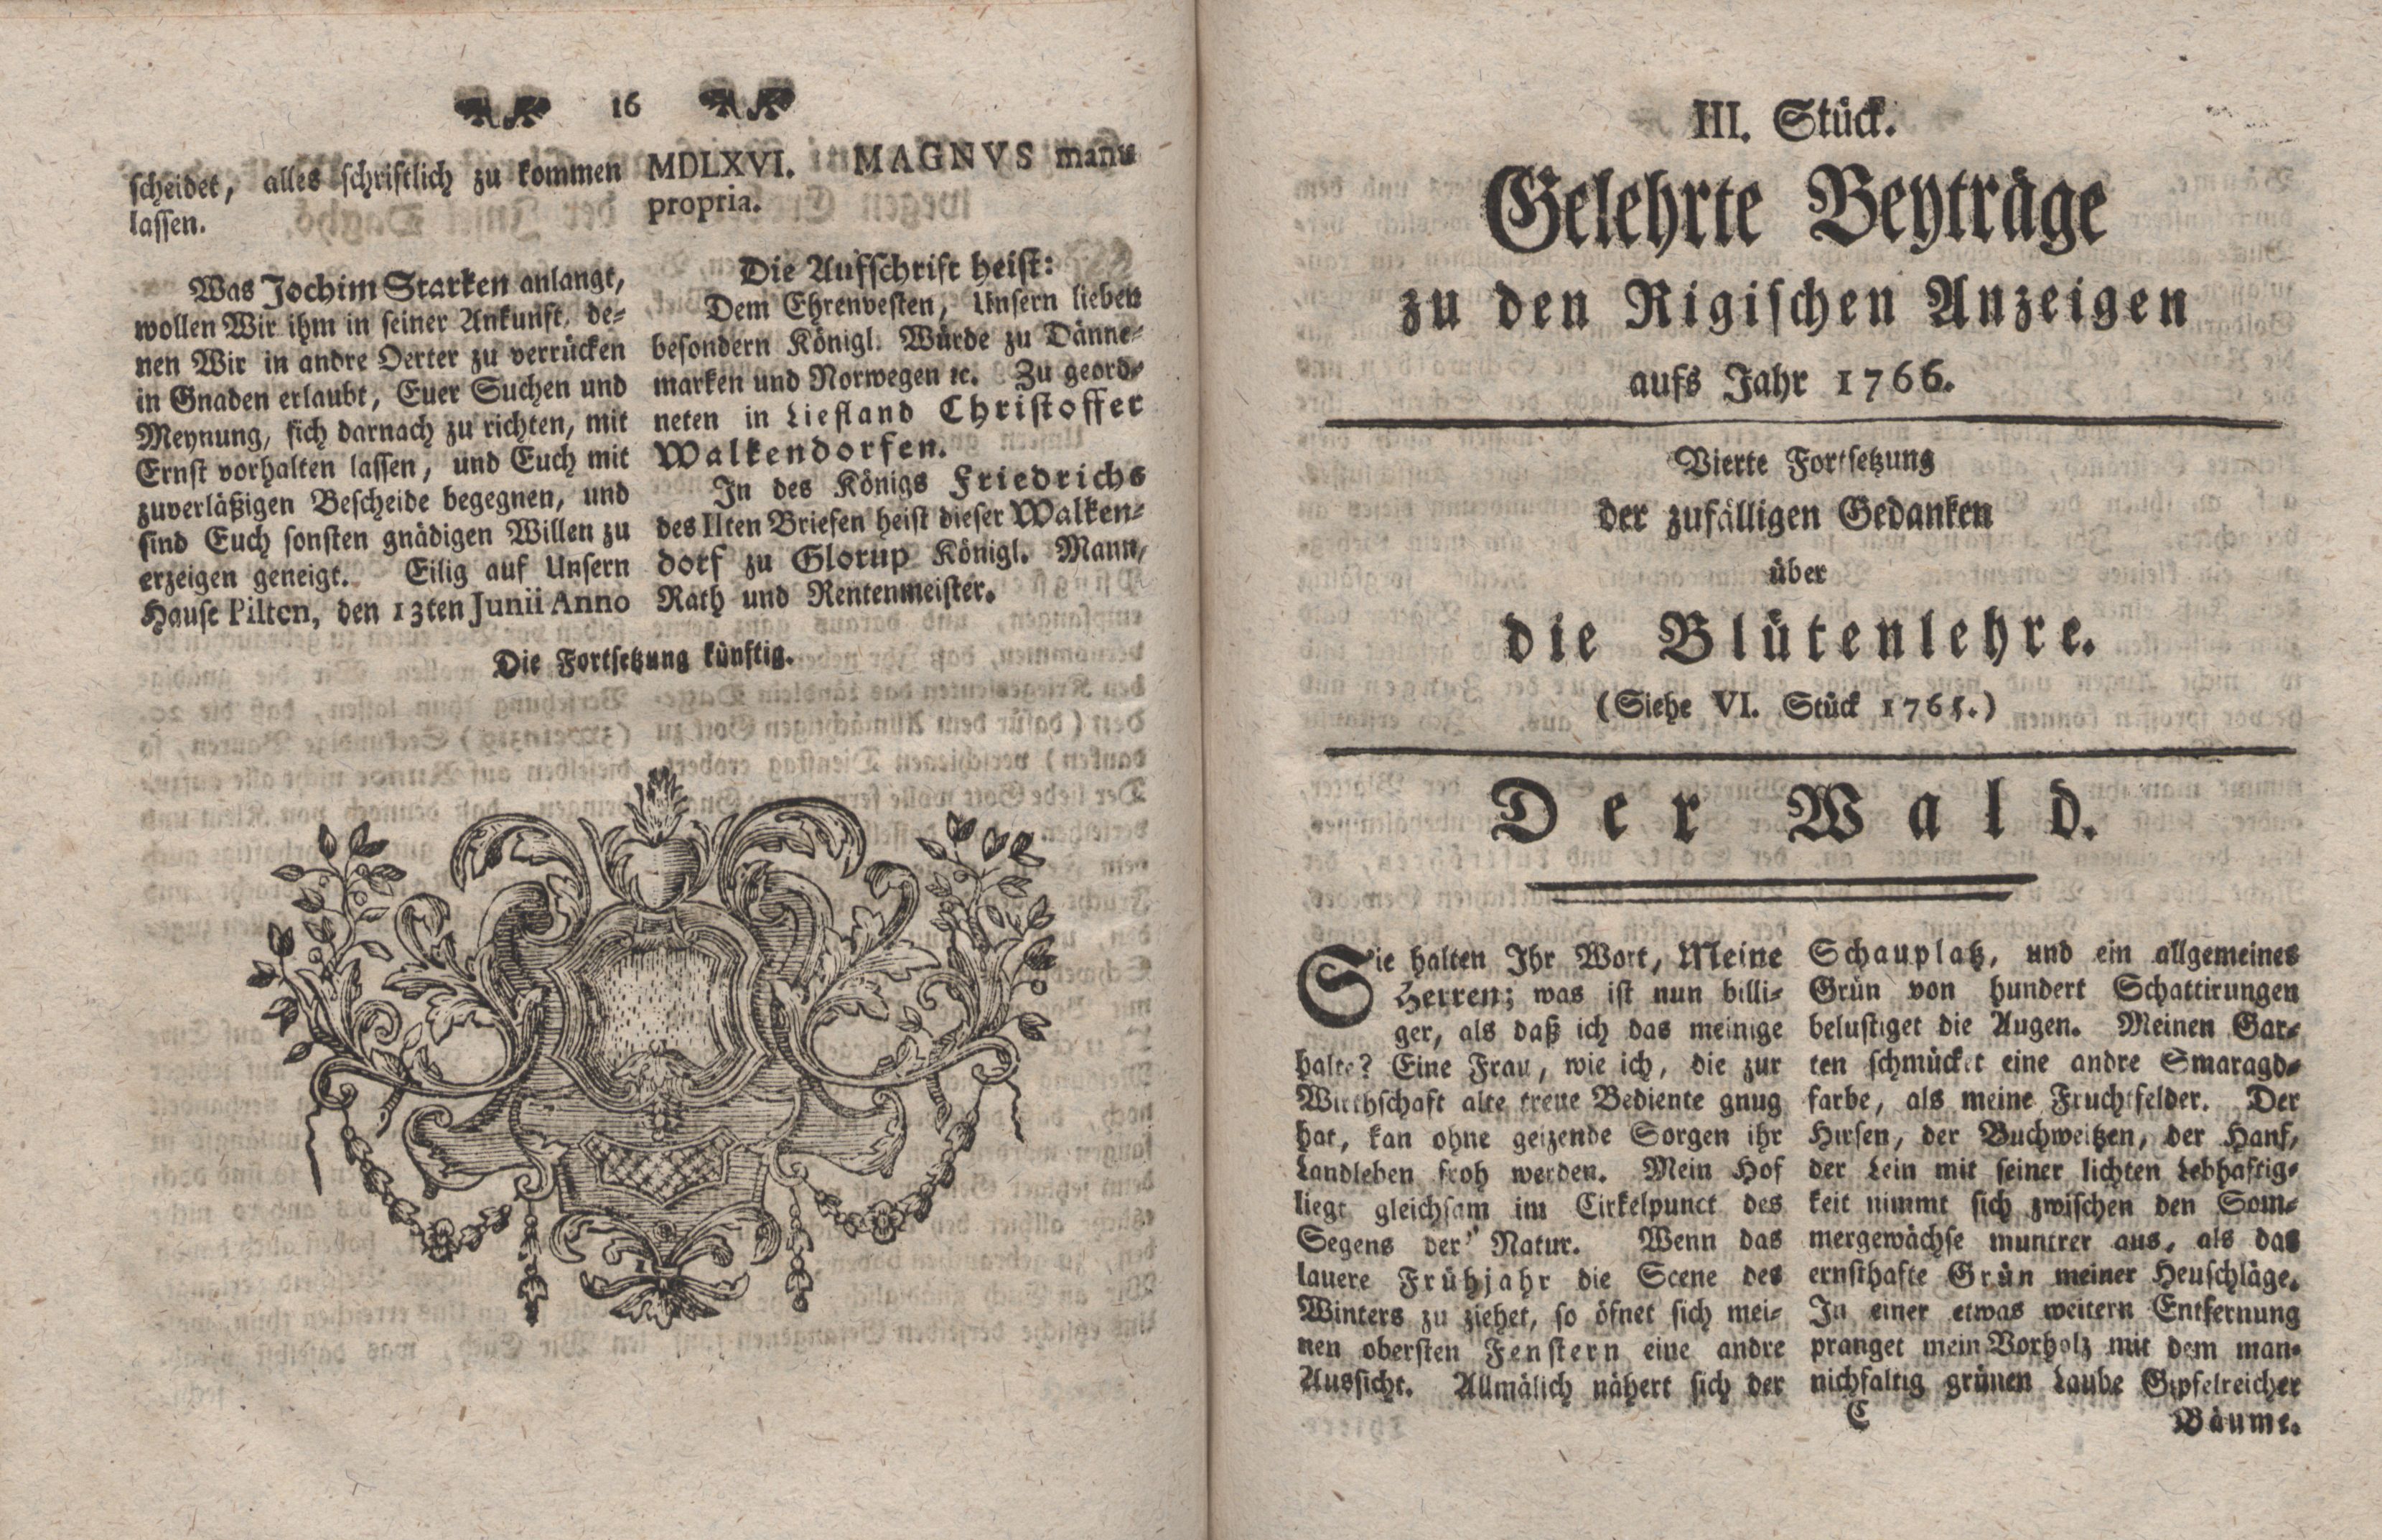 Gelehrte Beyträge zu den Rigischen Anzeigen 1766 (1766) | 9. (16-33) Haupttext